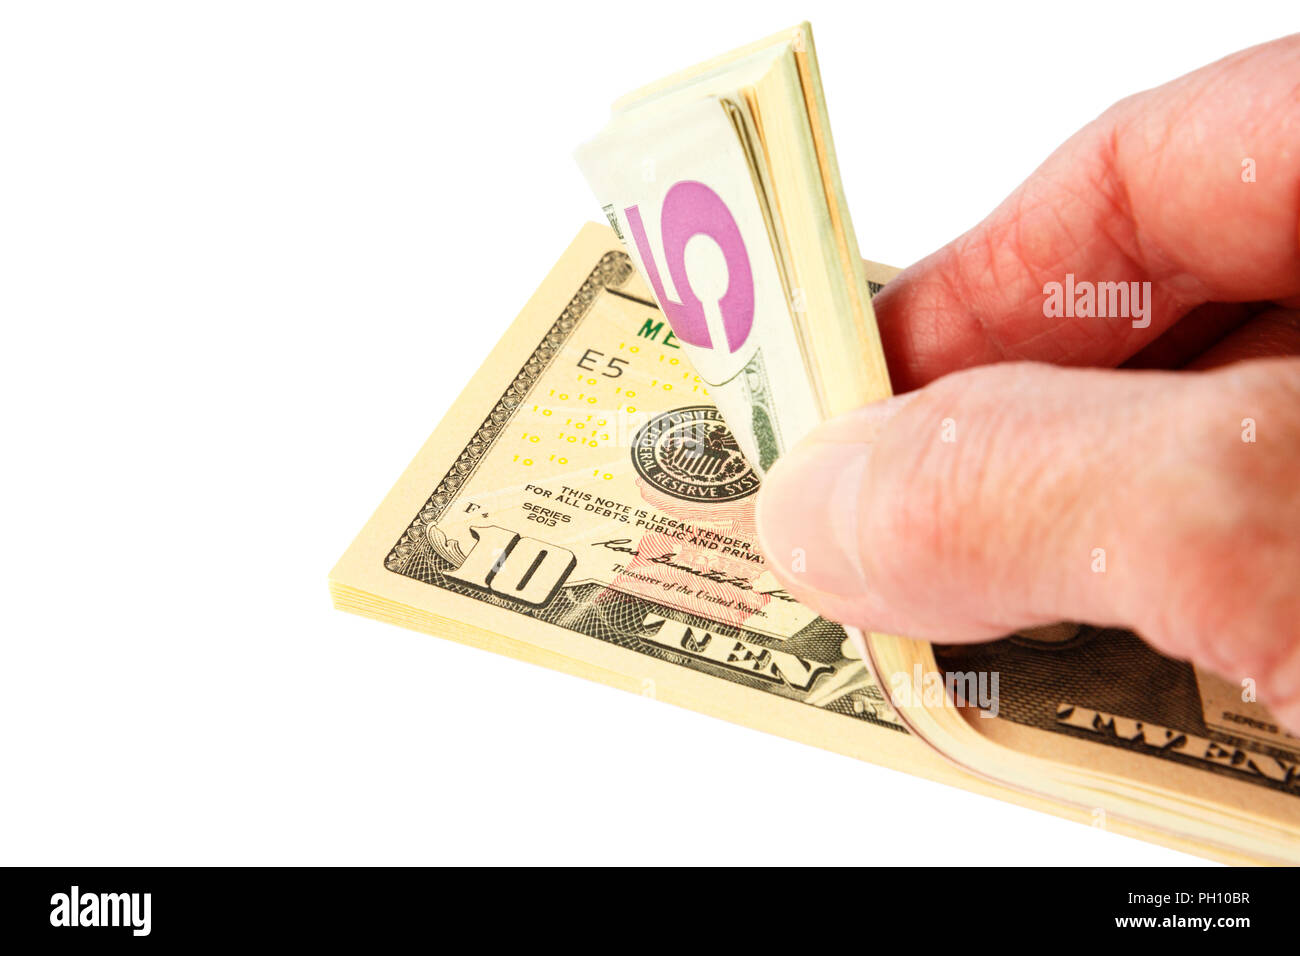 La main d'une personne âgée comptant un tas de monnaie américaine en dollars US billets billets $ espèces isolées sur un fond blanc. ÉTATS-UNIS Banque D'Images